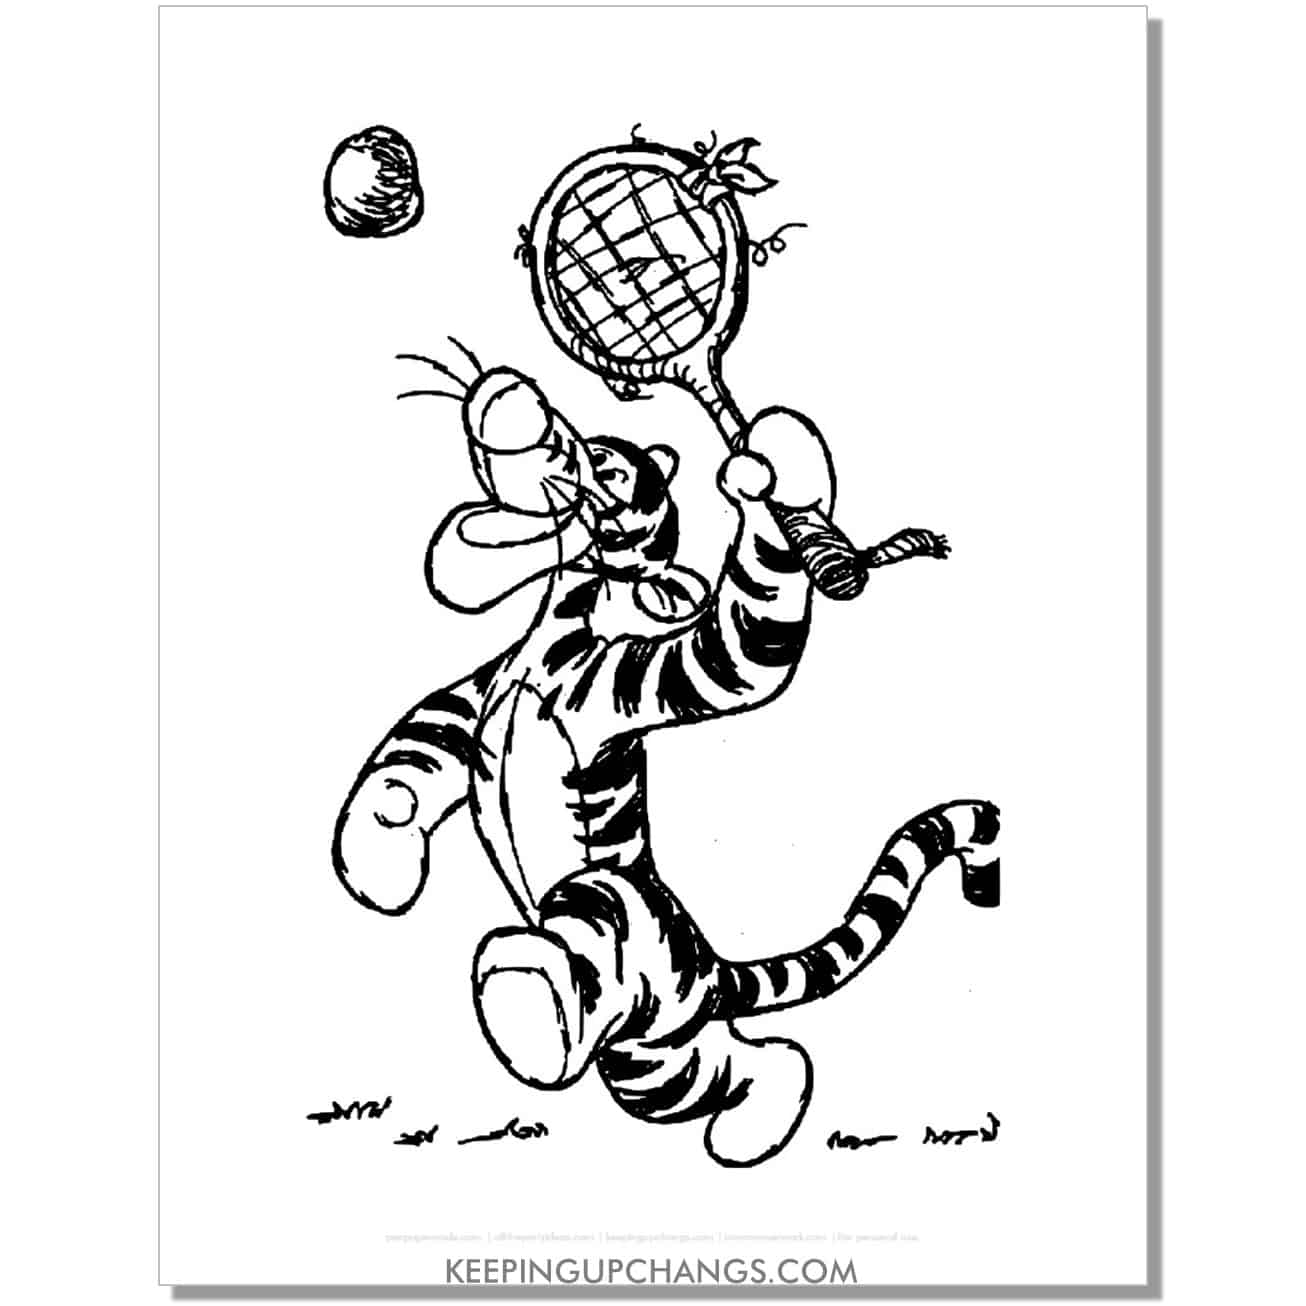 tigger swings racket at tennis ball coloring page, sheet.